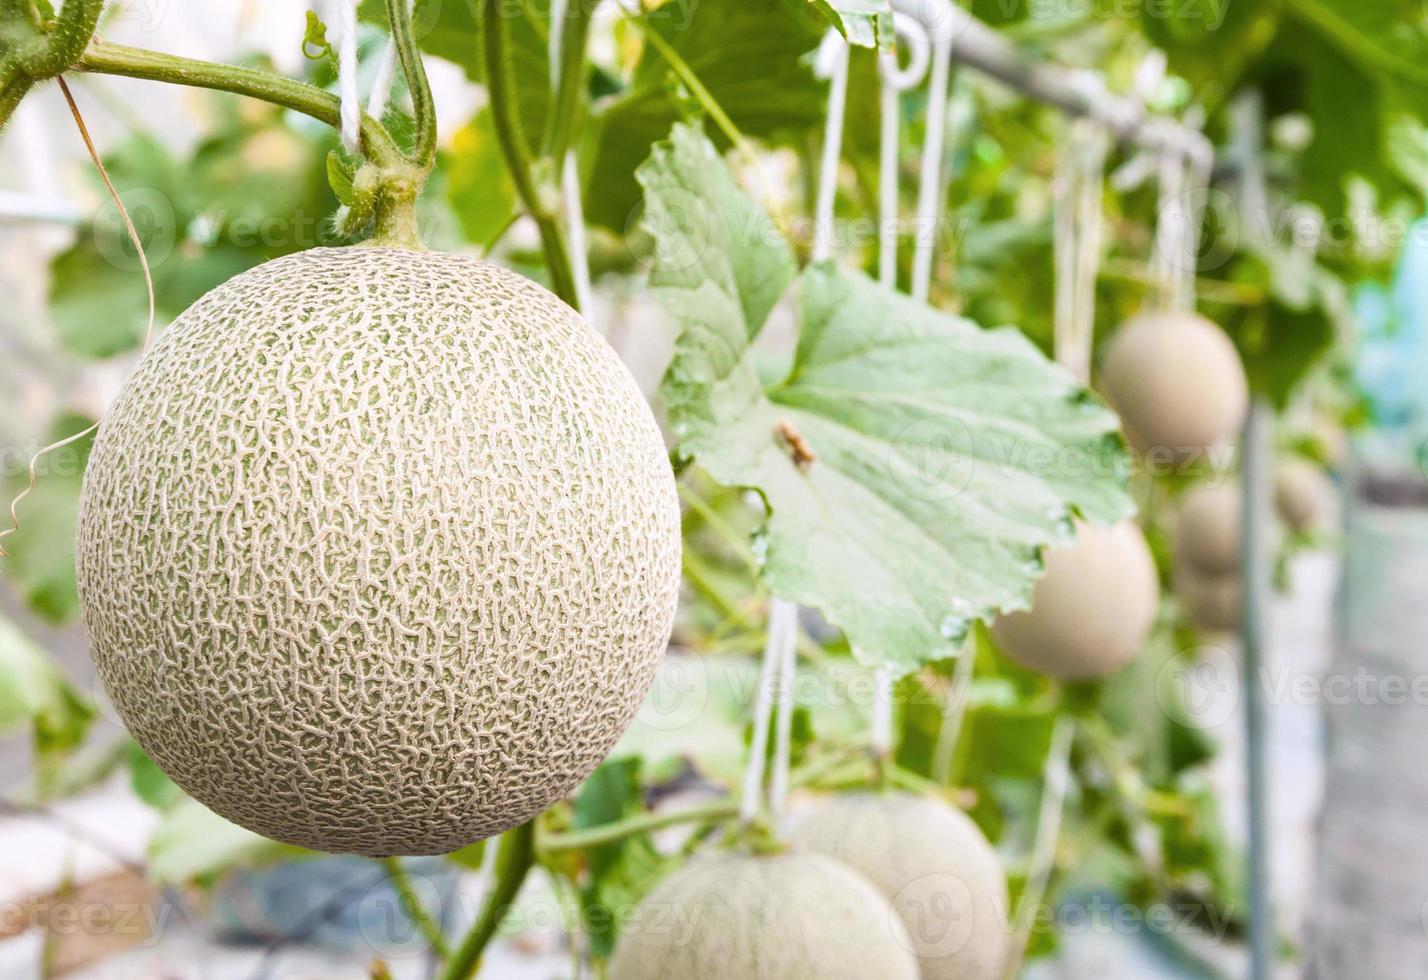 cantaloupmelon meloner växande i en växthus stöds förbi sträng melon nät selektiv fokus foto